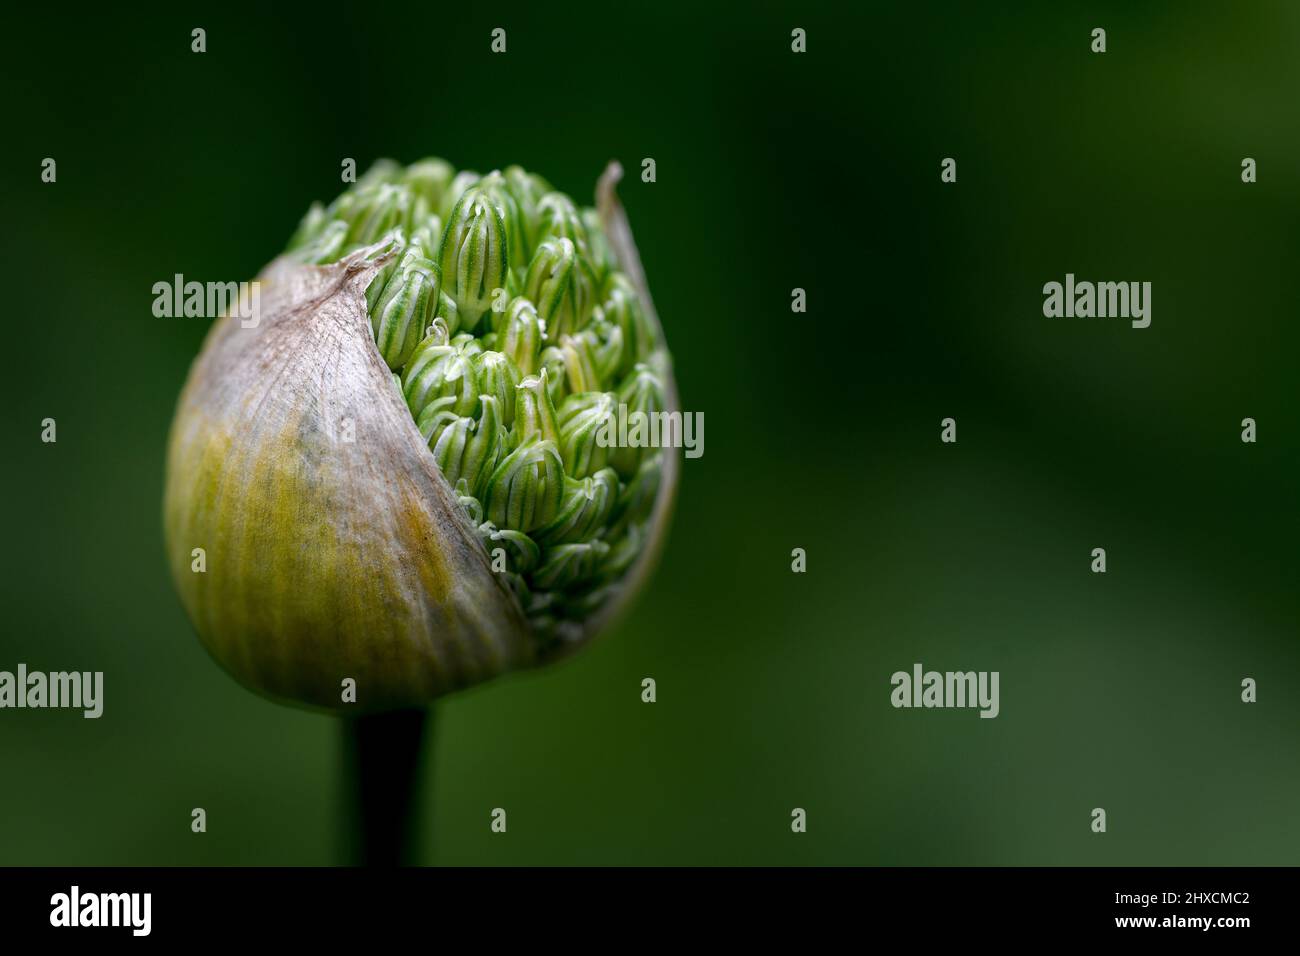 Allium, Allium giganteum, Amaryllidaceae, Amaryllisgewächs Foto Stock